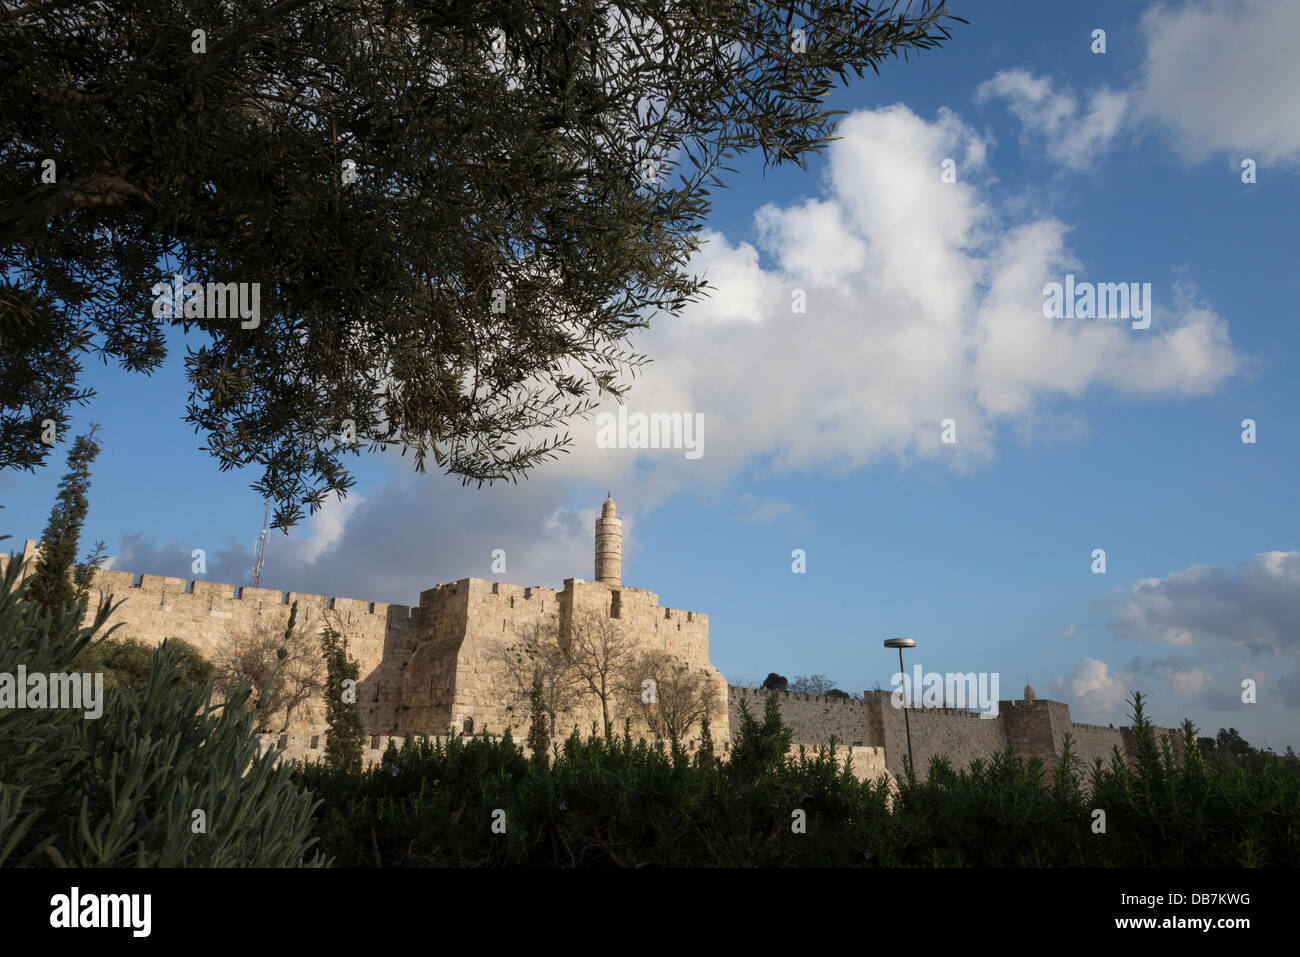 La ciudadela de David y las murallas de la ciudad, visto a través de olivo con nubes de luz. Ciudad Vieja de Jerusalén. Israel. Foto de stock